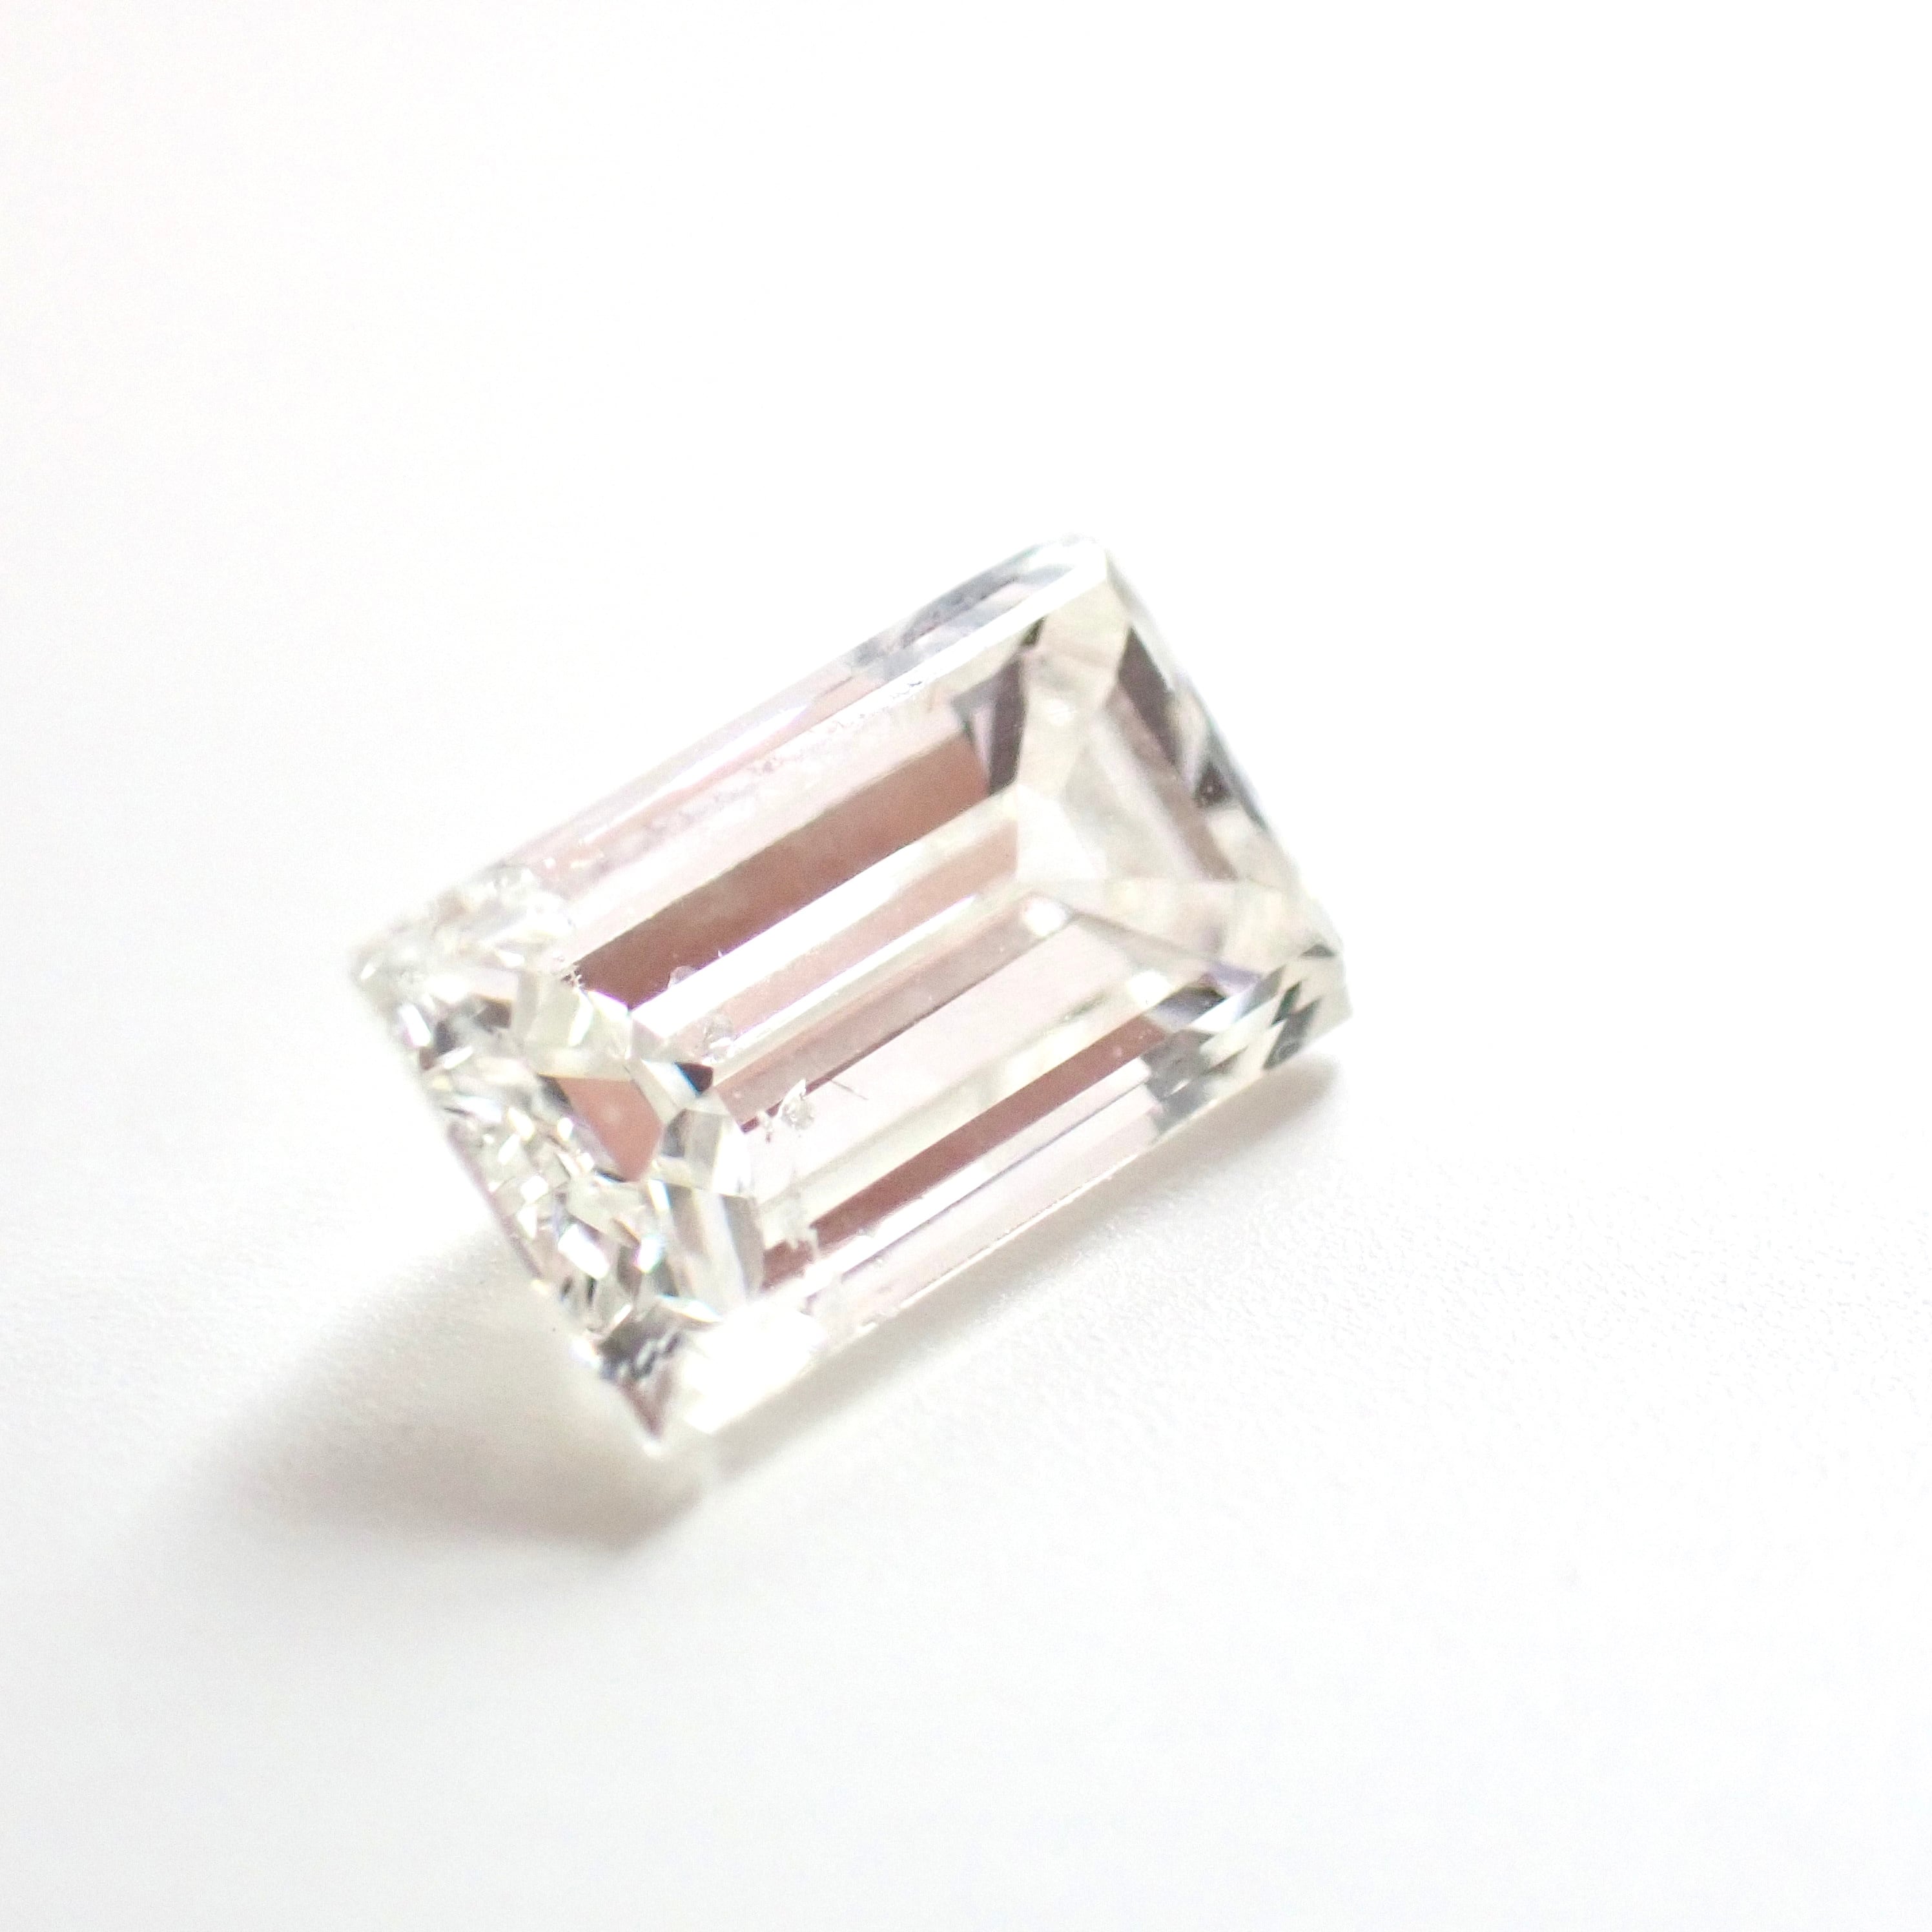 バゲットカット 1.005ct ダイヤ ダイヤモンド ルース 裸石 天然 ￼￼￼￼￼￼￼￼中央宝石研究所ソーティング